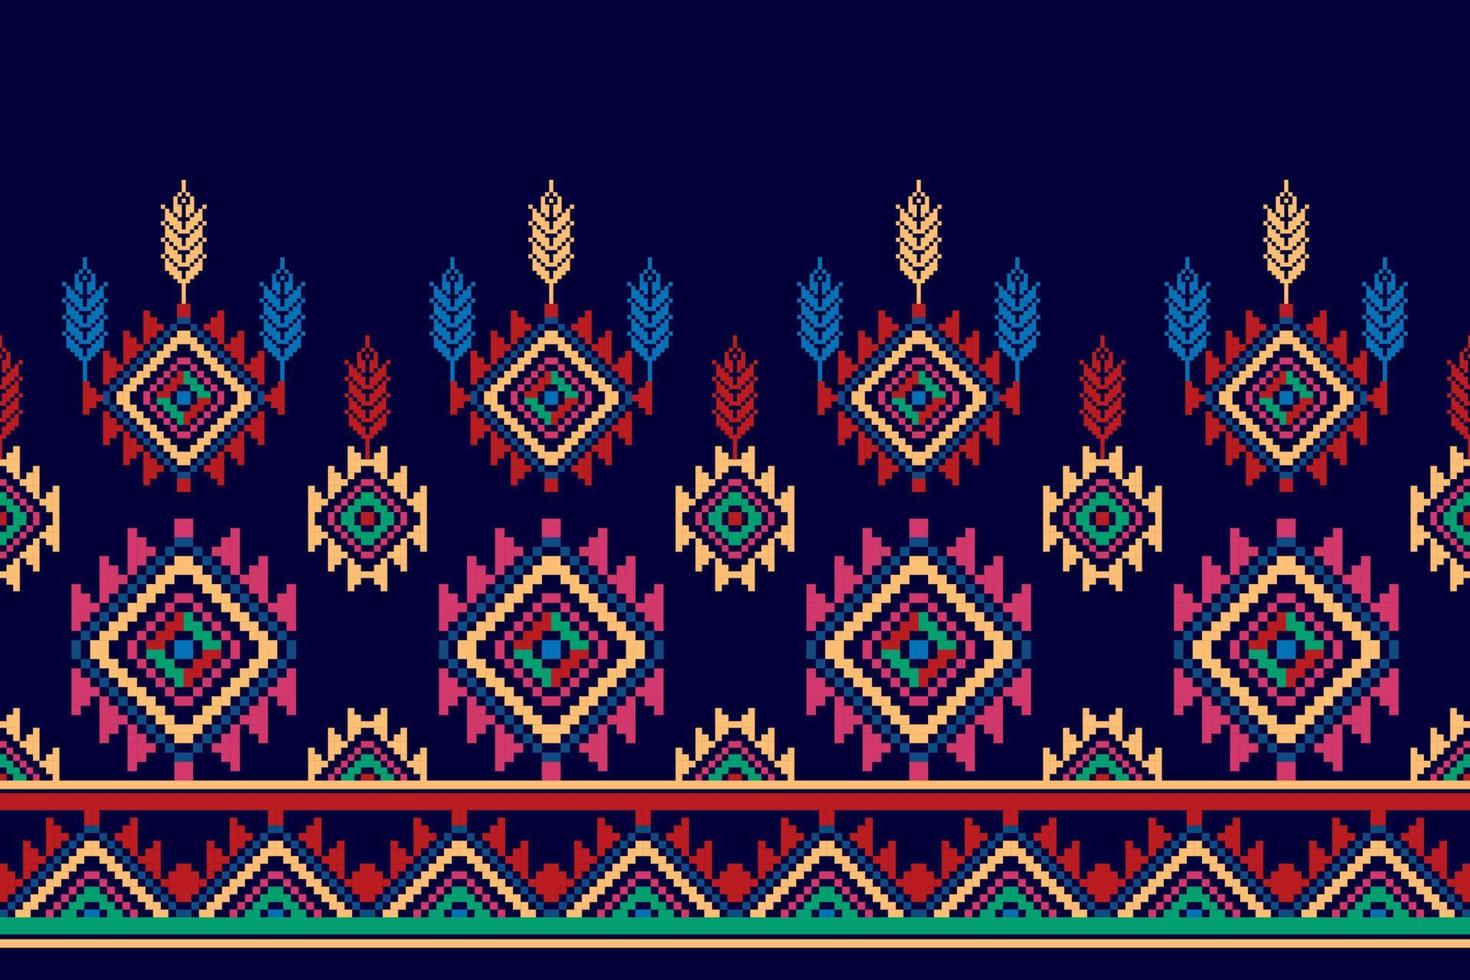 bloemen Hongaars Pools Moravisch volk etnisch naadloos patroon ontwerp. aztec kleding stof tapijt boho mandala's textiel decor behang. tribal inheems motief bloem traditioneel borduurwerk vector